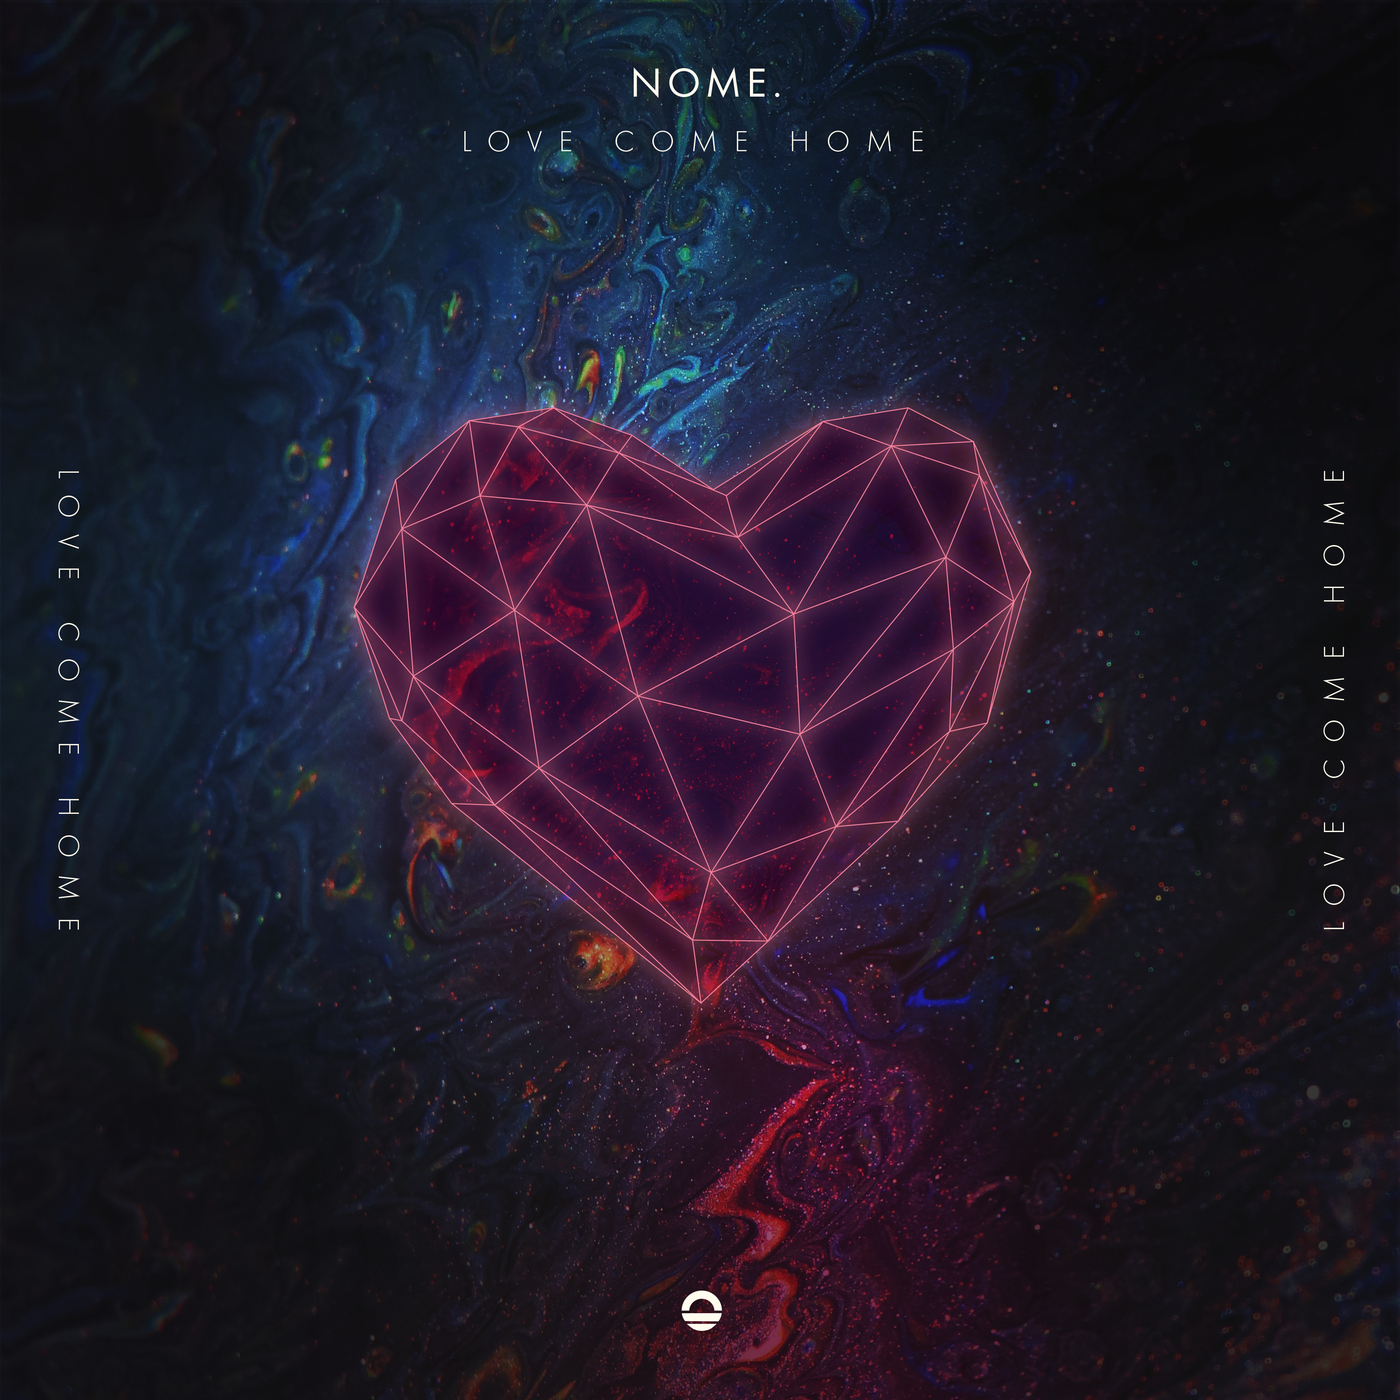 Download Love Come Home